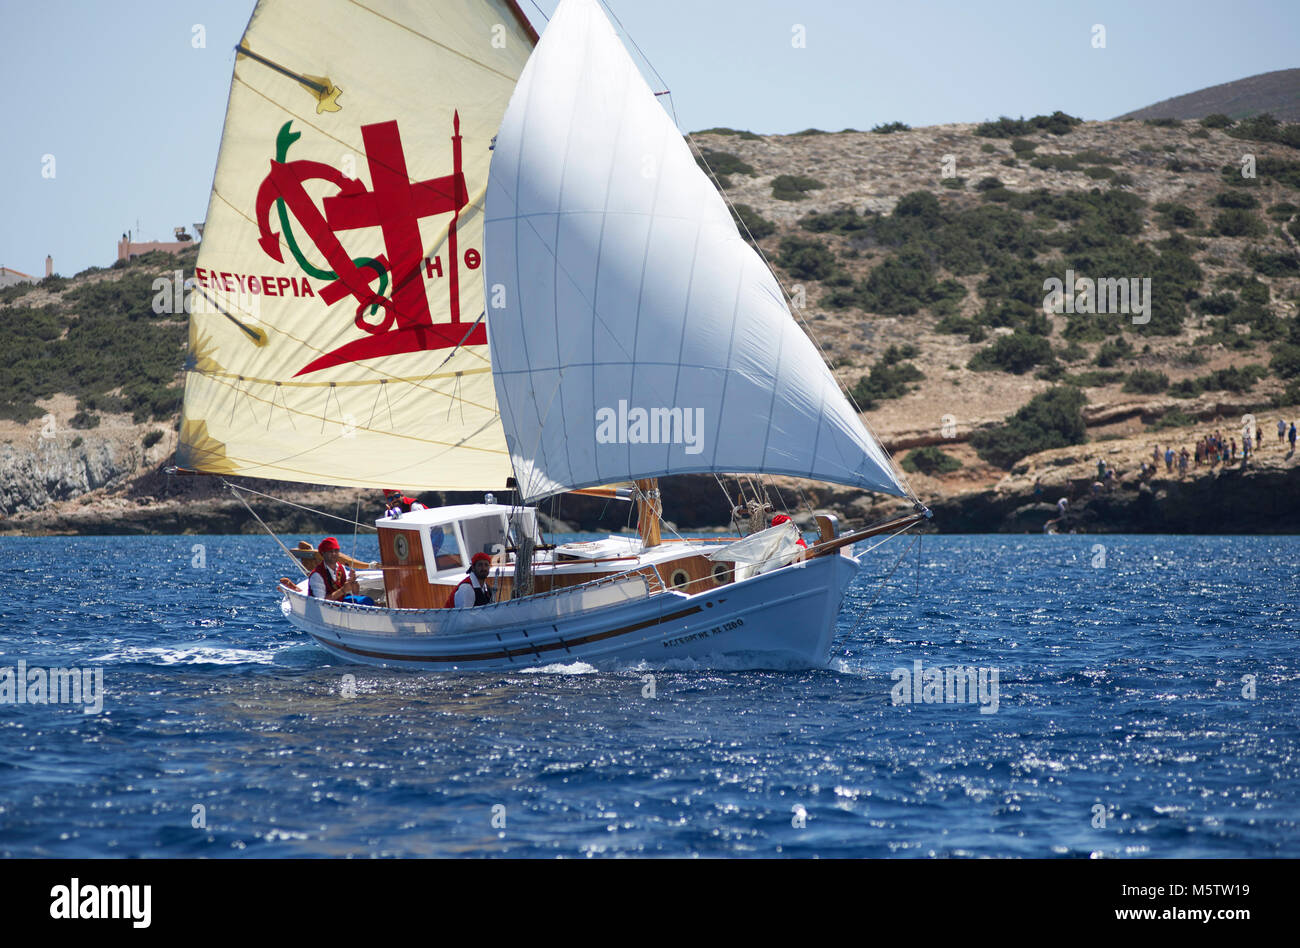 Bateau de pêche traditionnel grec à Agios Georgios off Syros Cyclades durant la Classic Yacht Race. L'équipage portent costume tradition. Banque D'Images